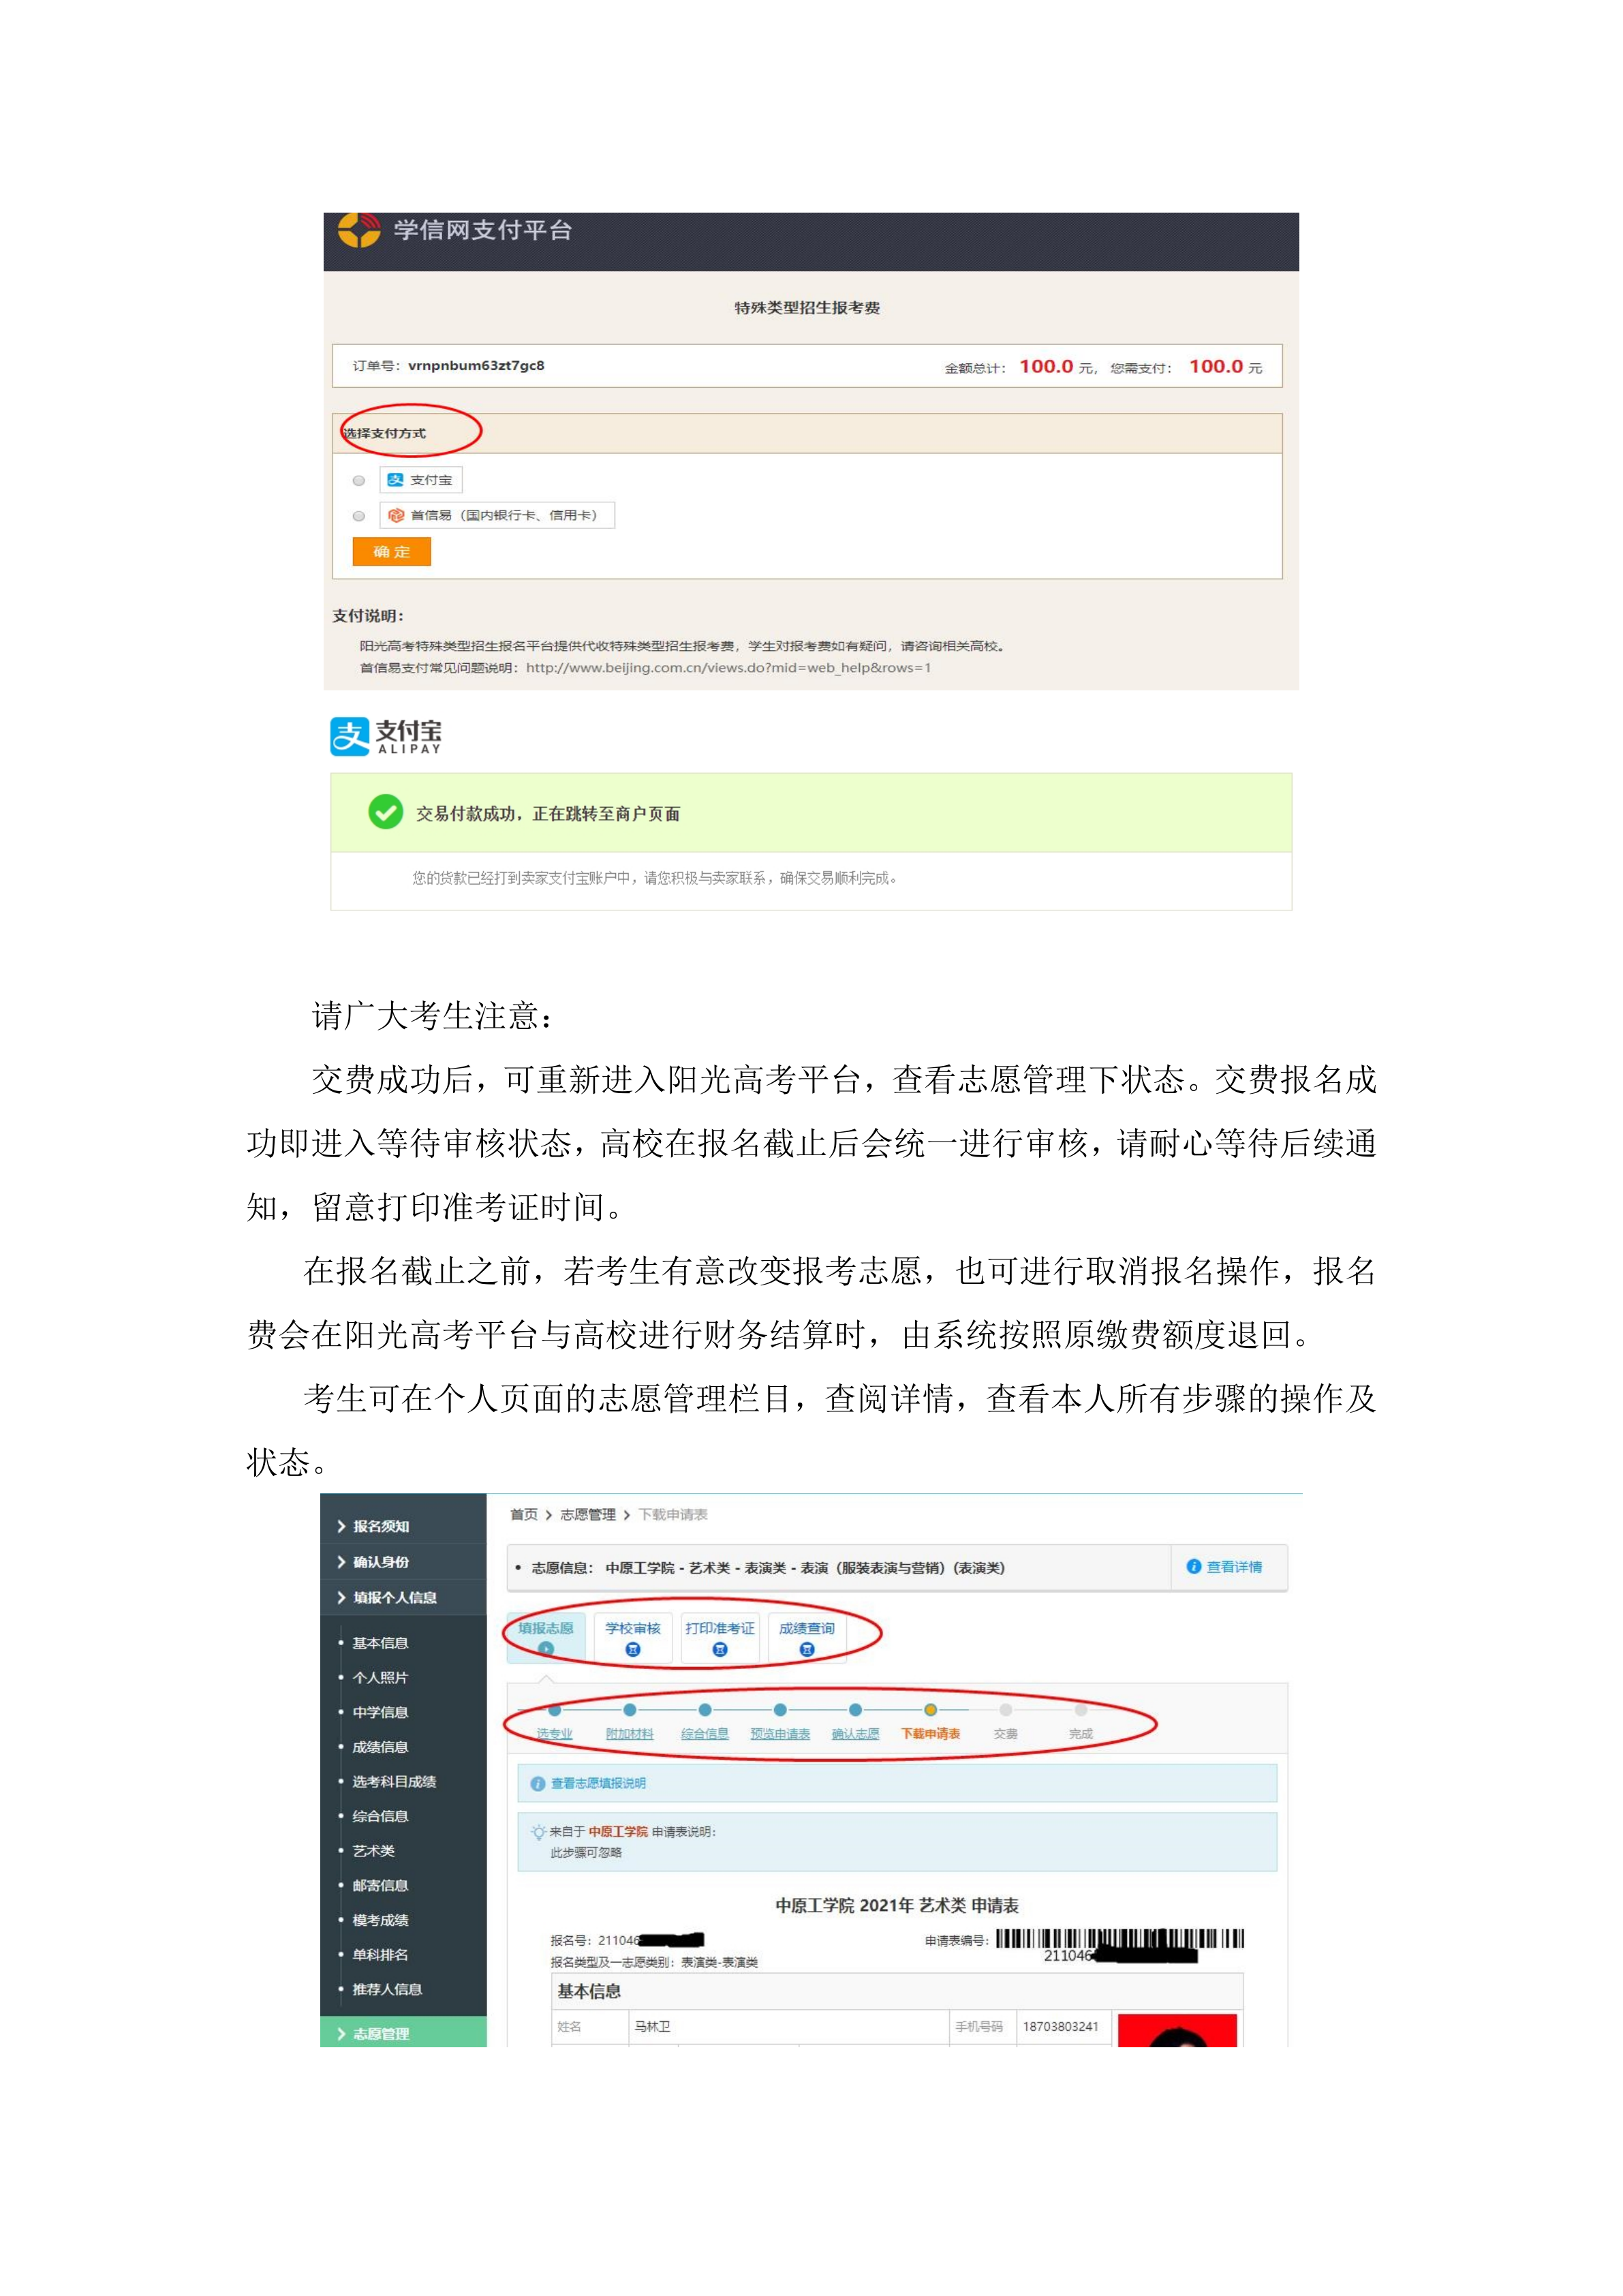 中原工学院表演专业网上报名流程(1)_12.png